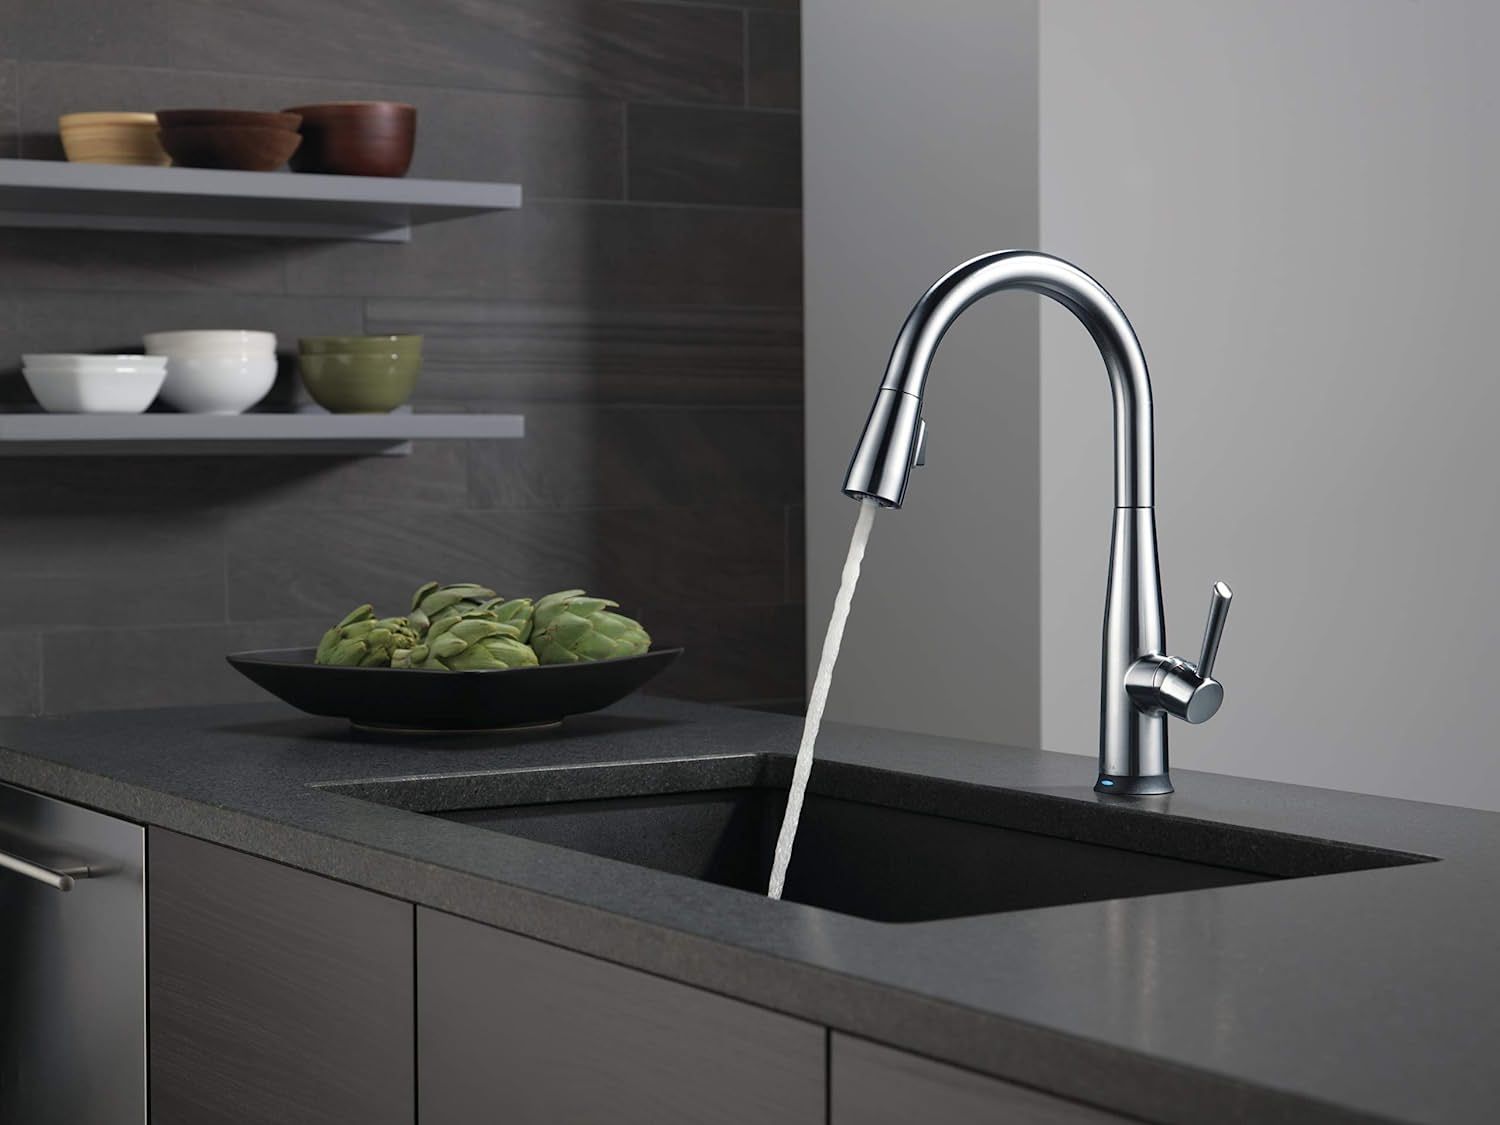 delta faucet essa voiceiq kitchen faucet dispensing water into a sink